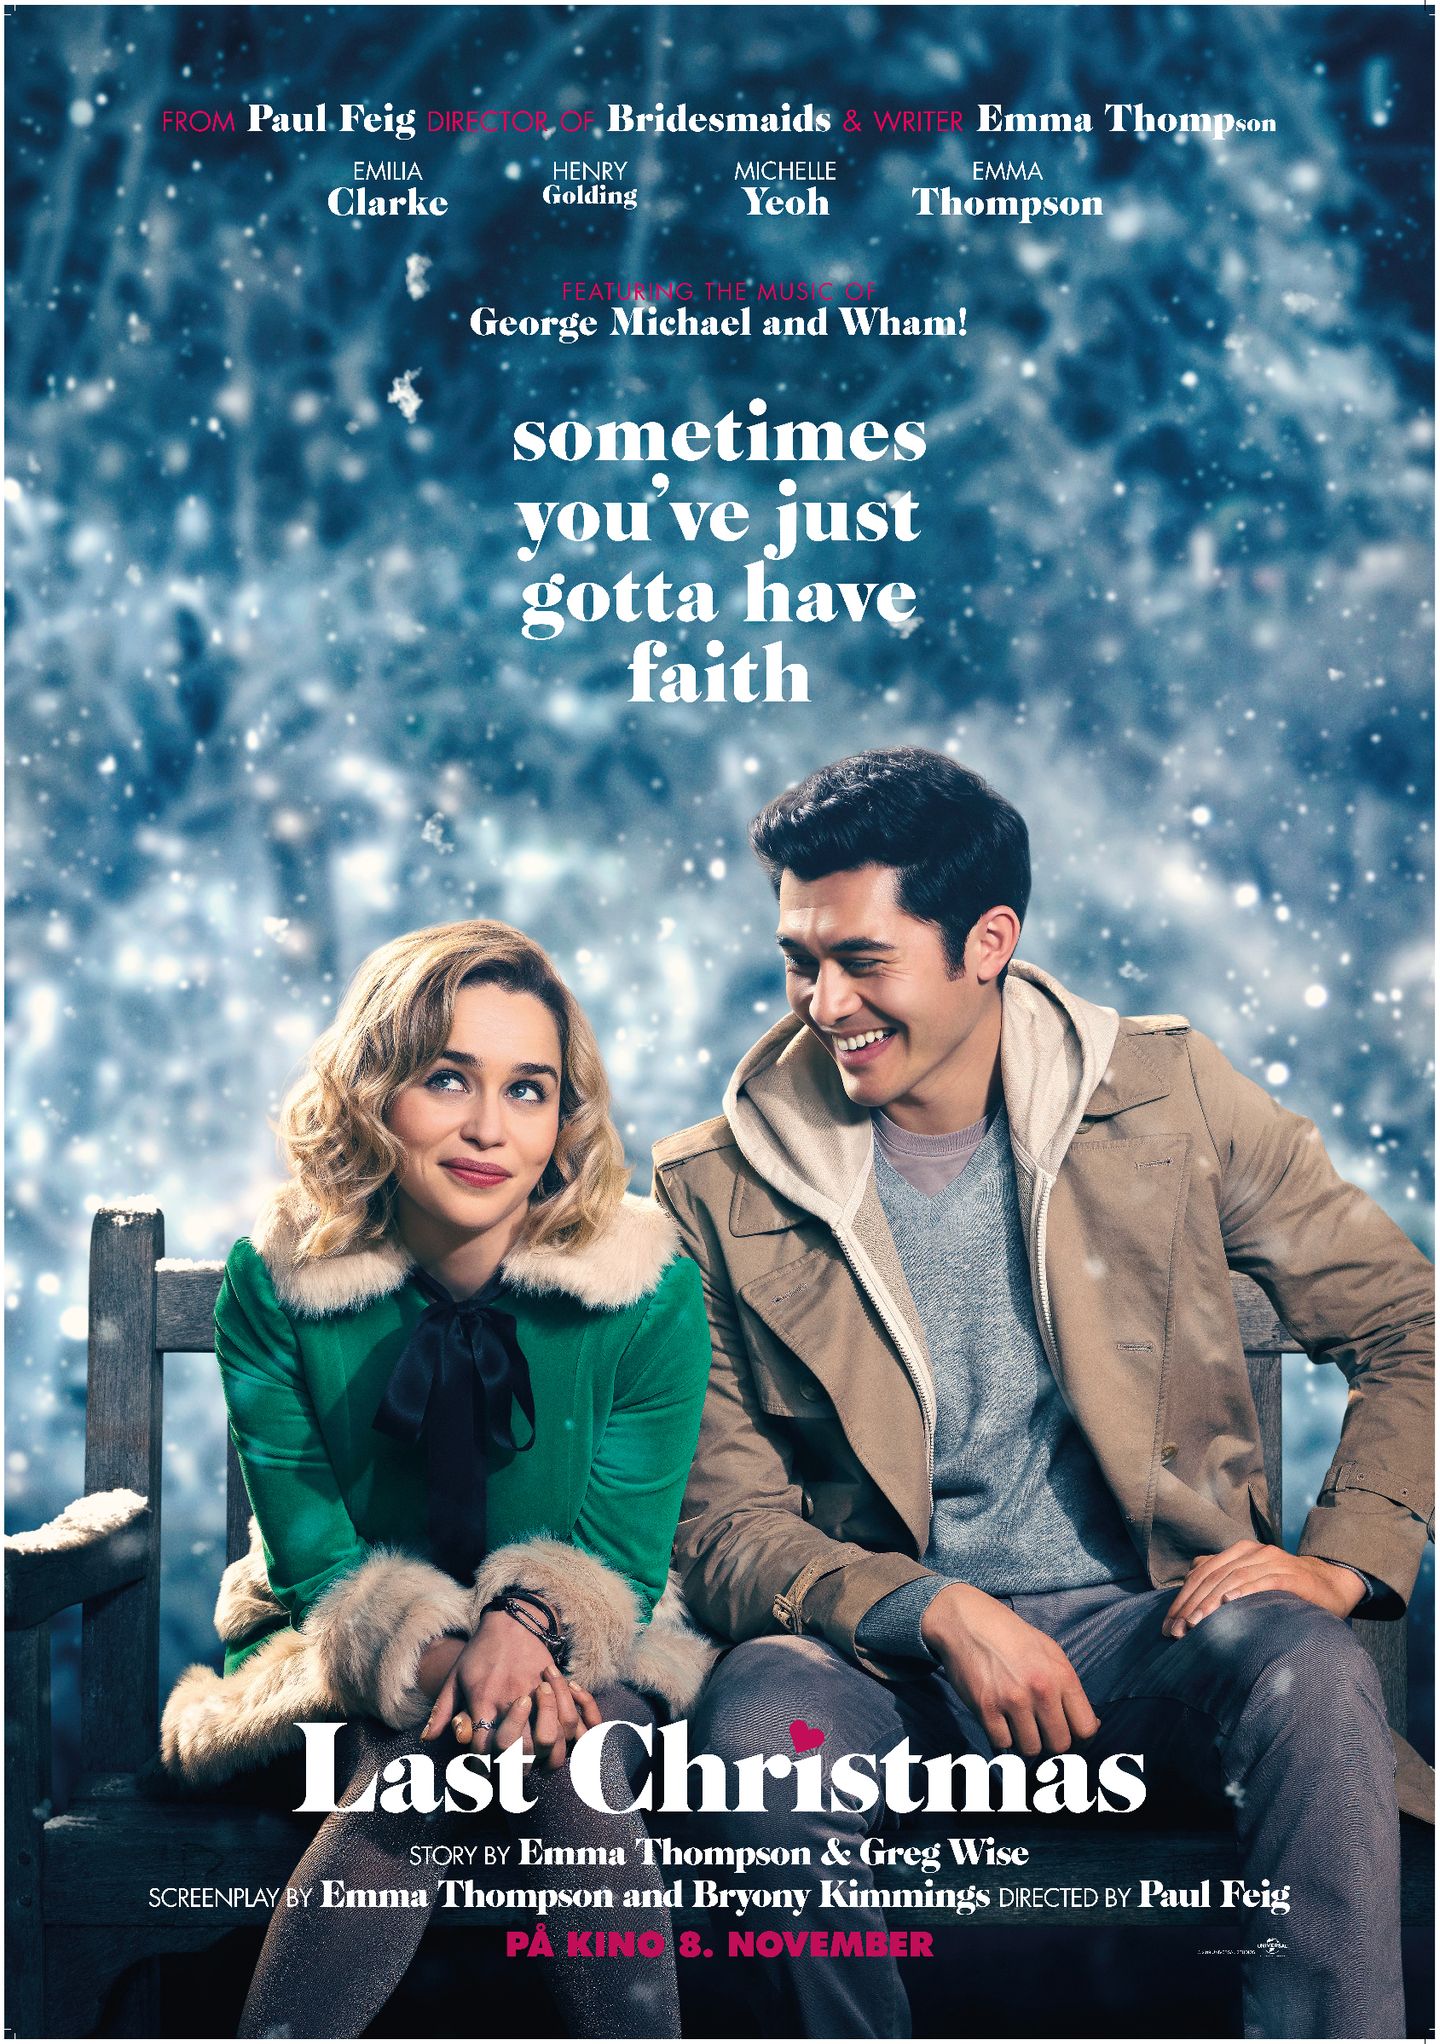 Plakat for 'Last Christmas'